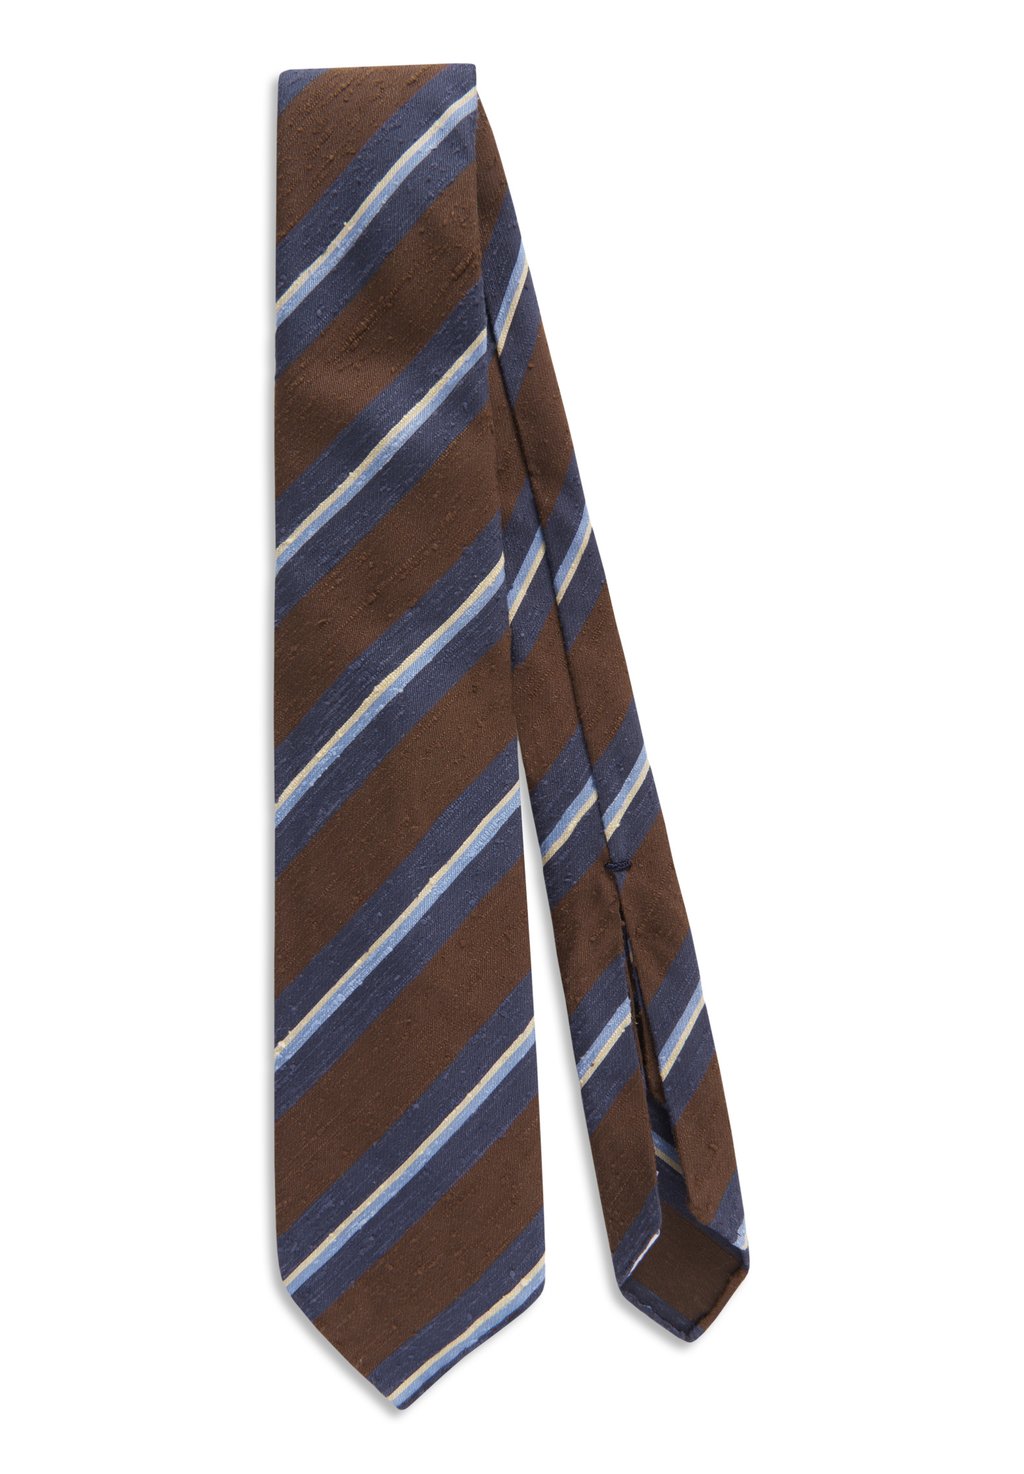 галстук oscar jacobson цвет french blue Галстук FOLD Oscar Jacobson, цвет dark brown